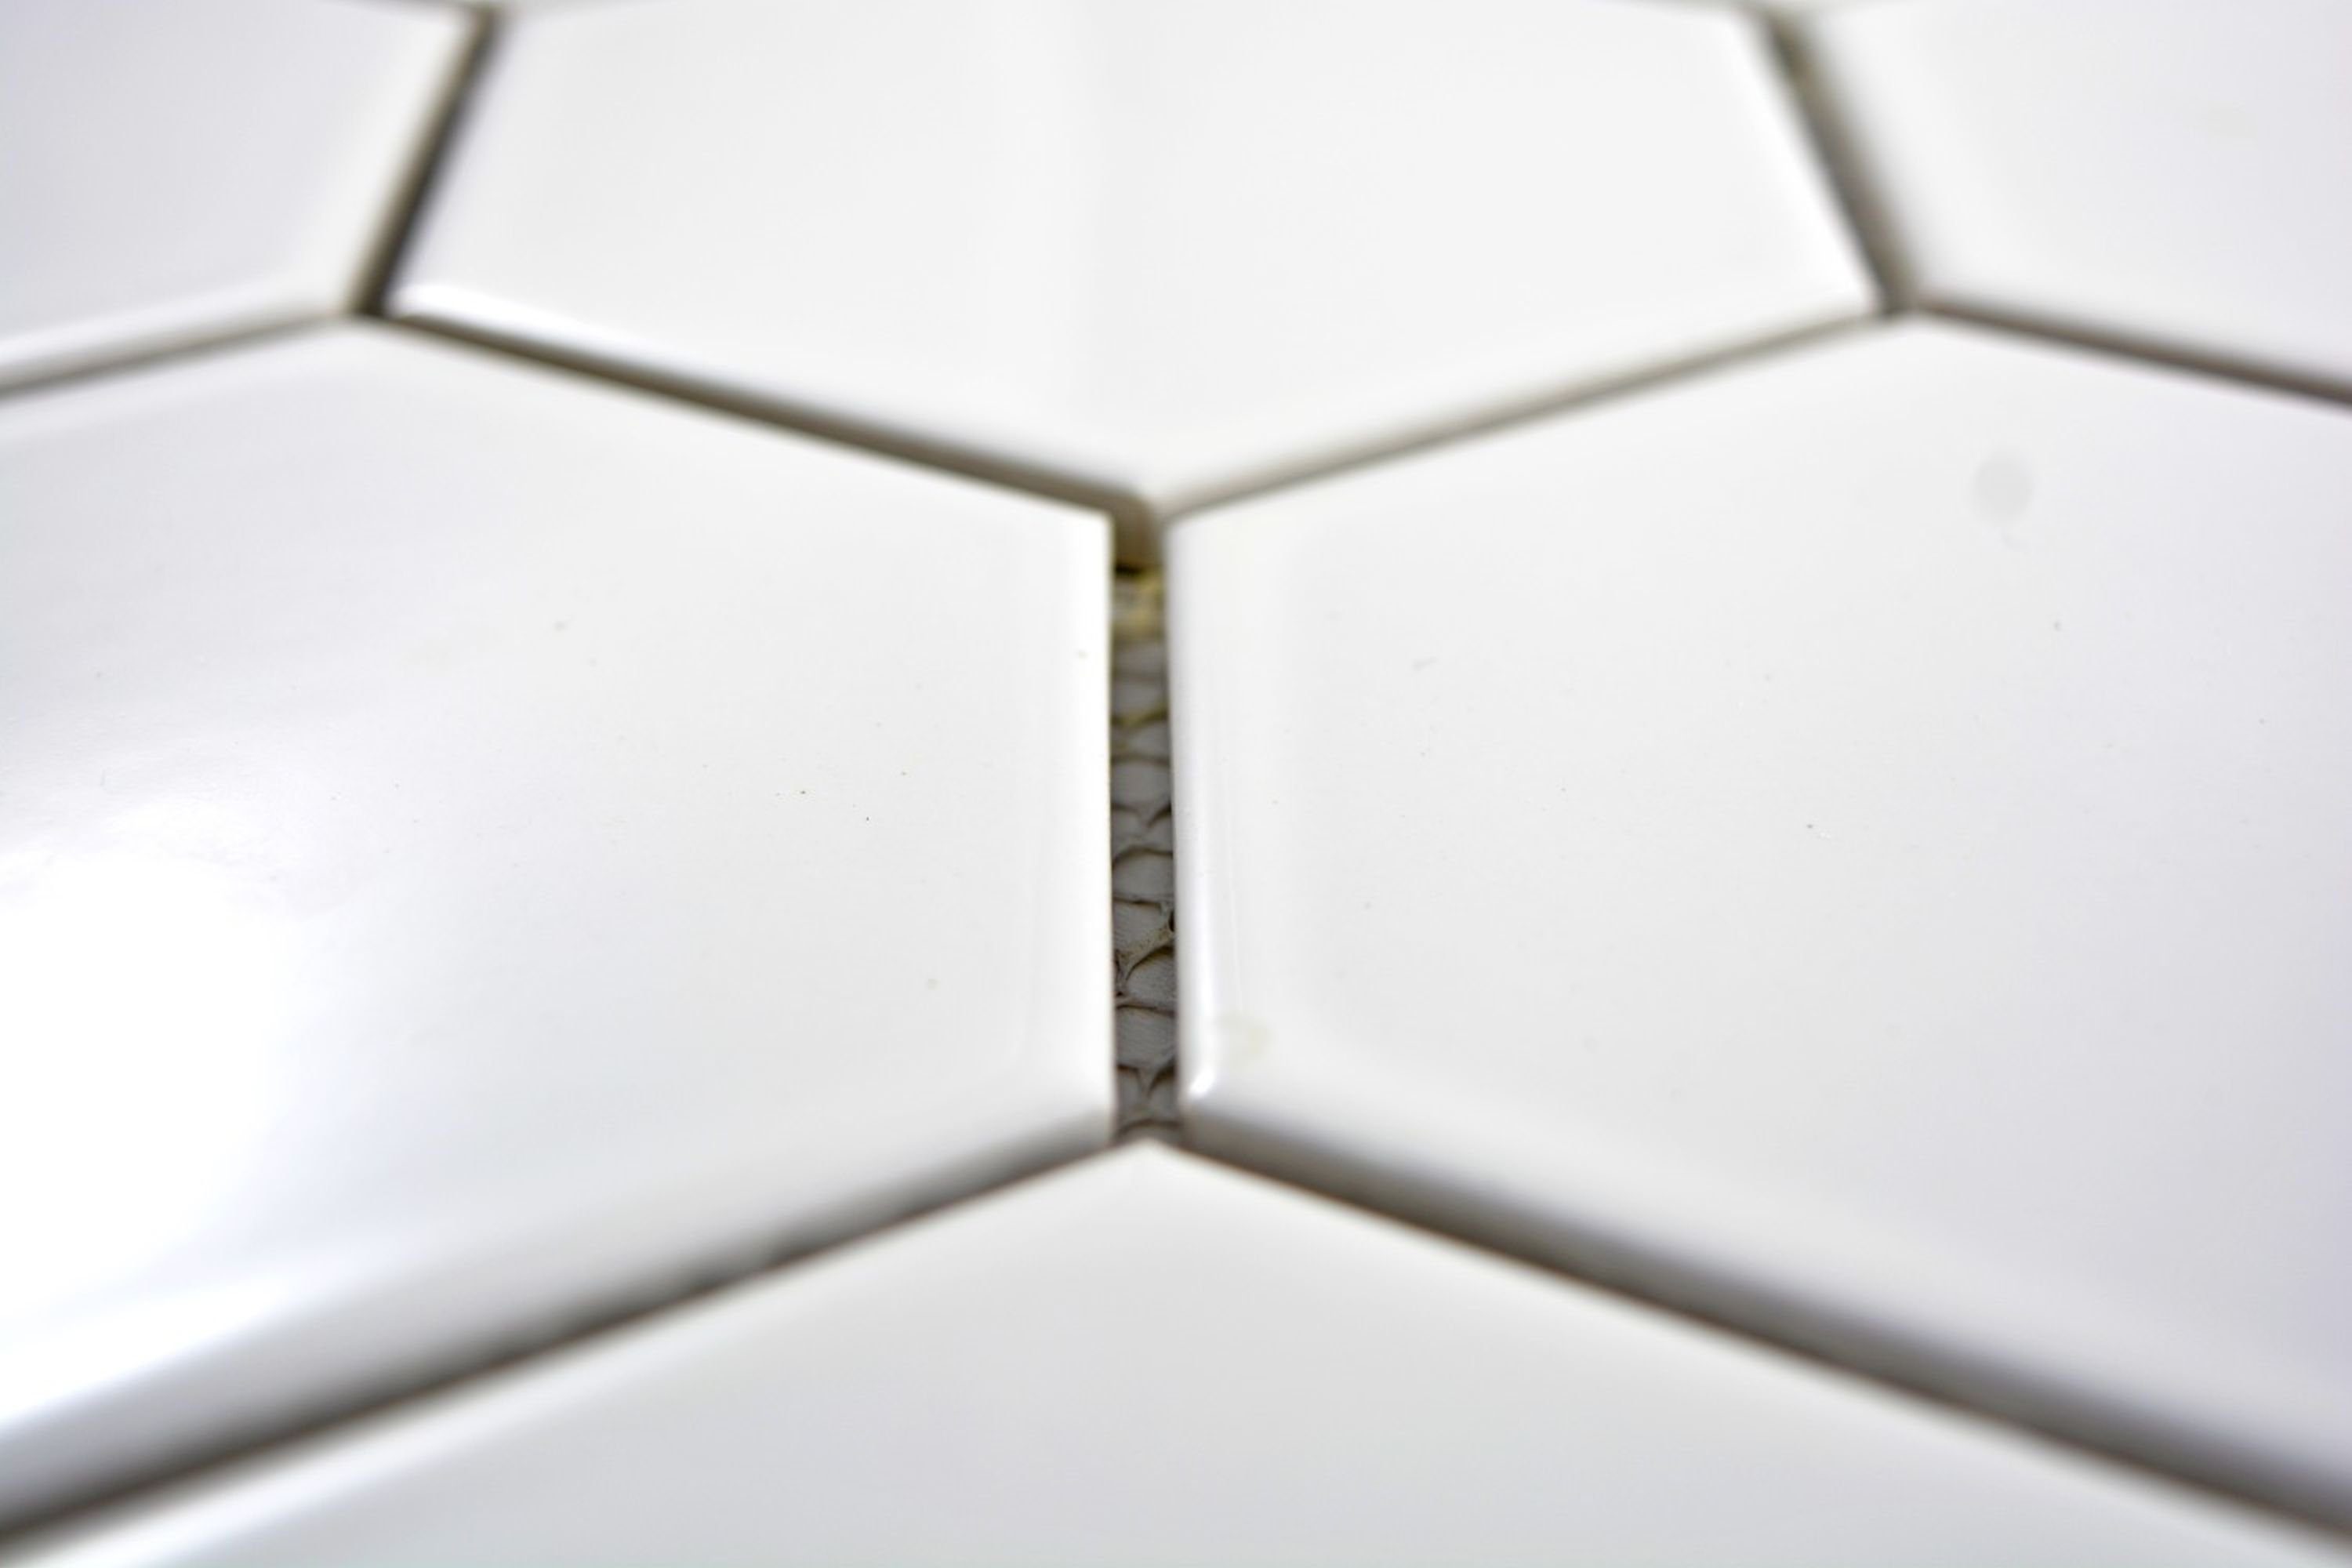 Küche Mosaikfliesen Wand Mosaik Keramik weiß glänzend Mosani Hexagonale Fliese Sechseck Bad